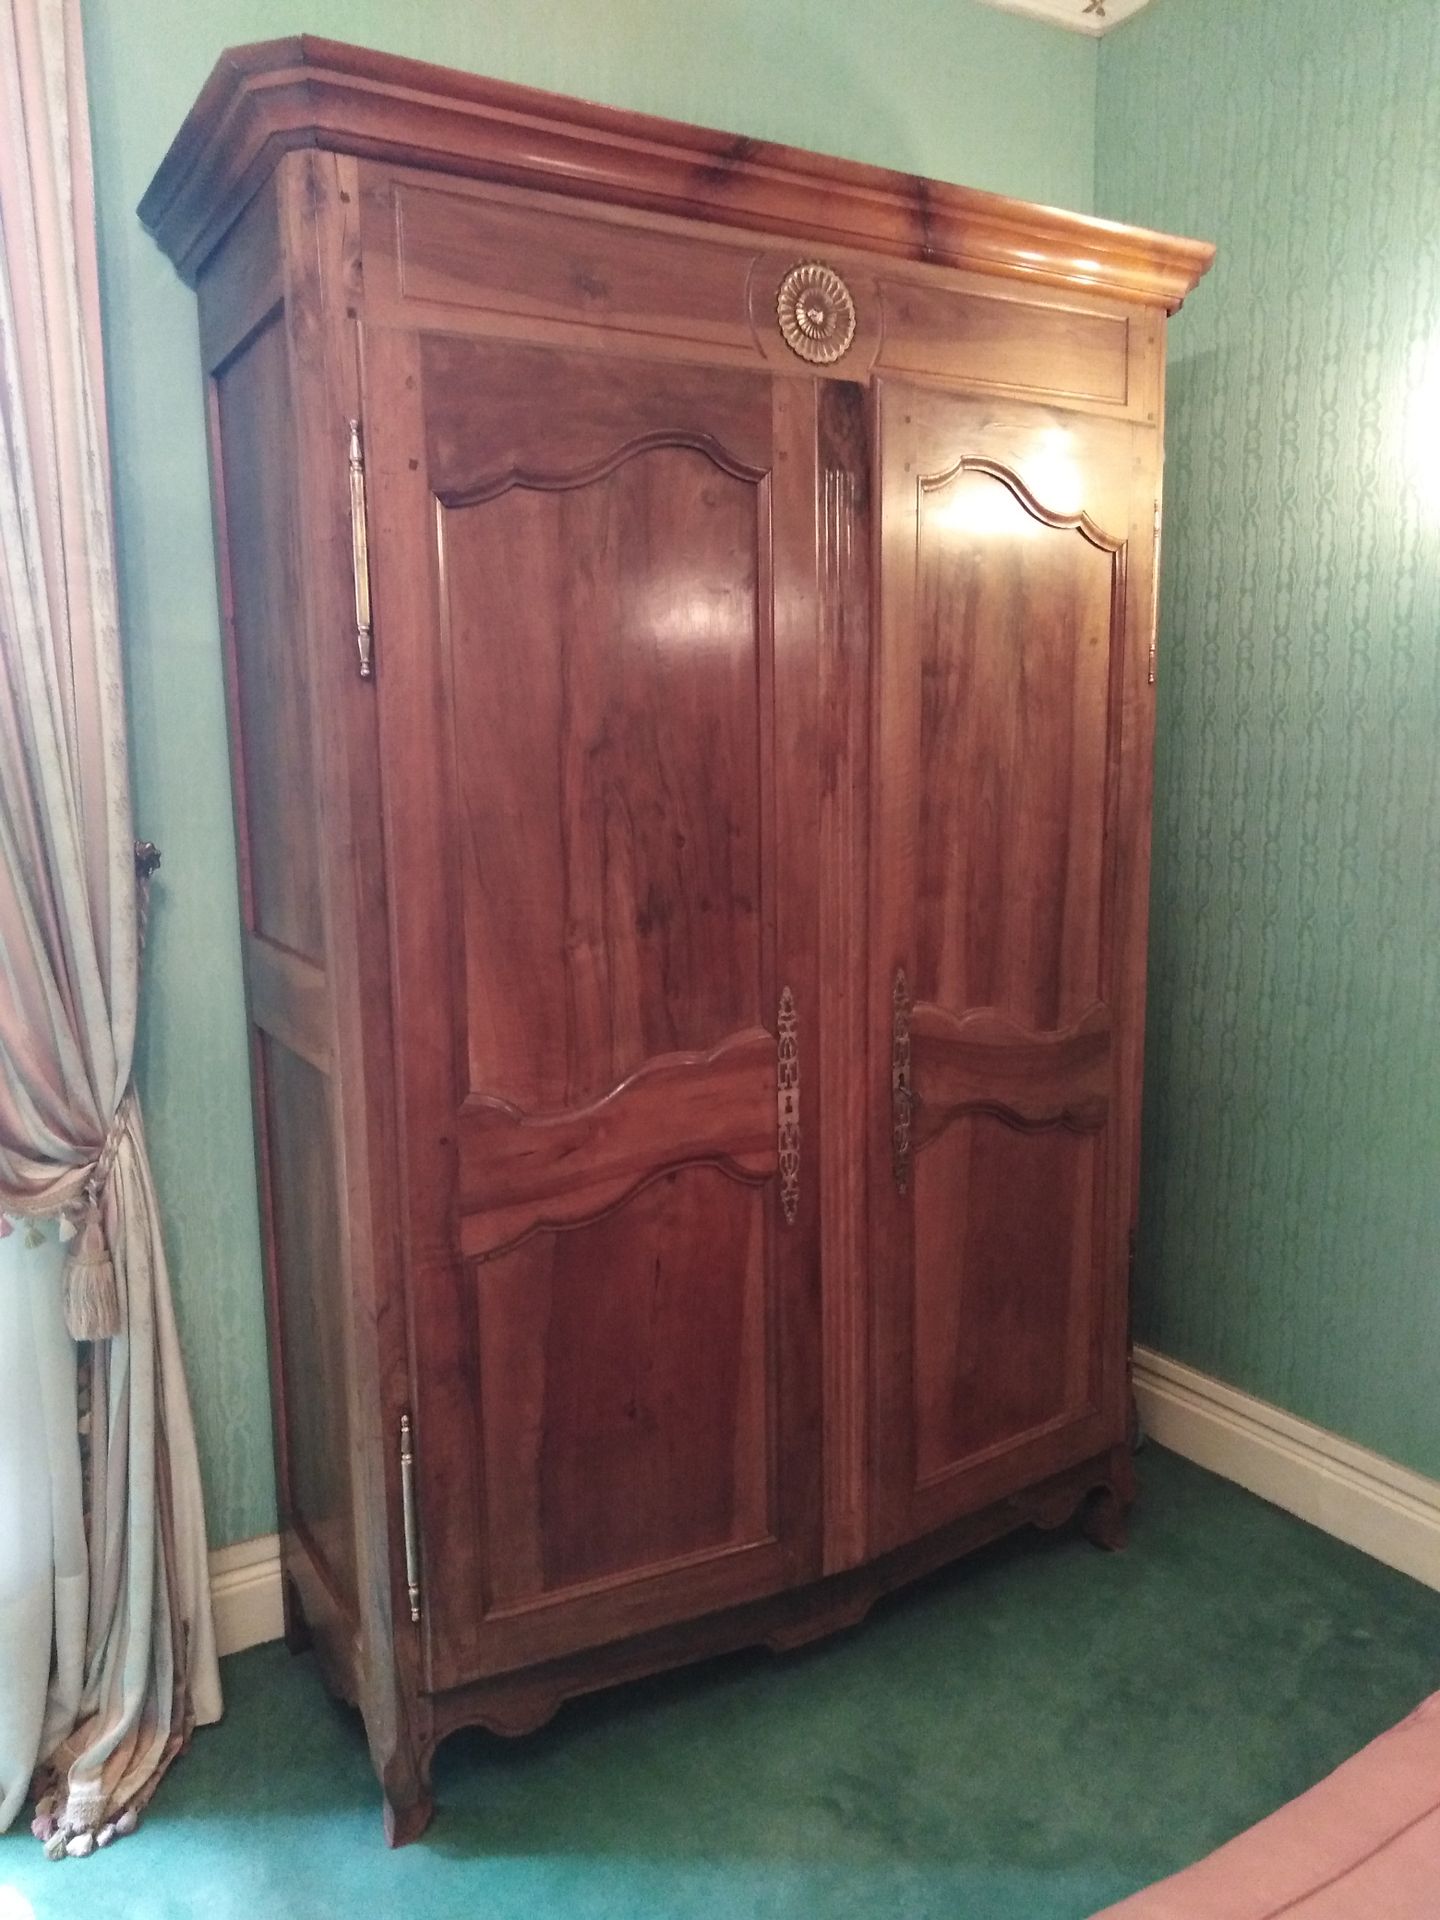 Null VENDÉENNE柜子，有两扇樱桃木门

19世纪

210 x 146 x 58 厘米

使用和维护的条件